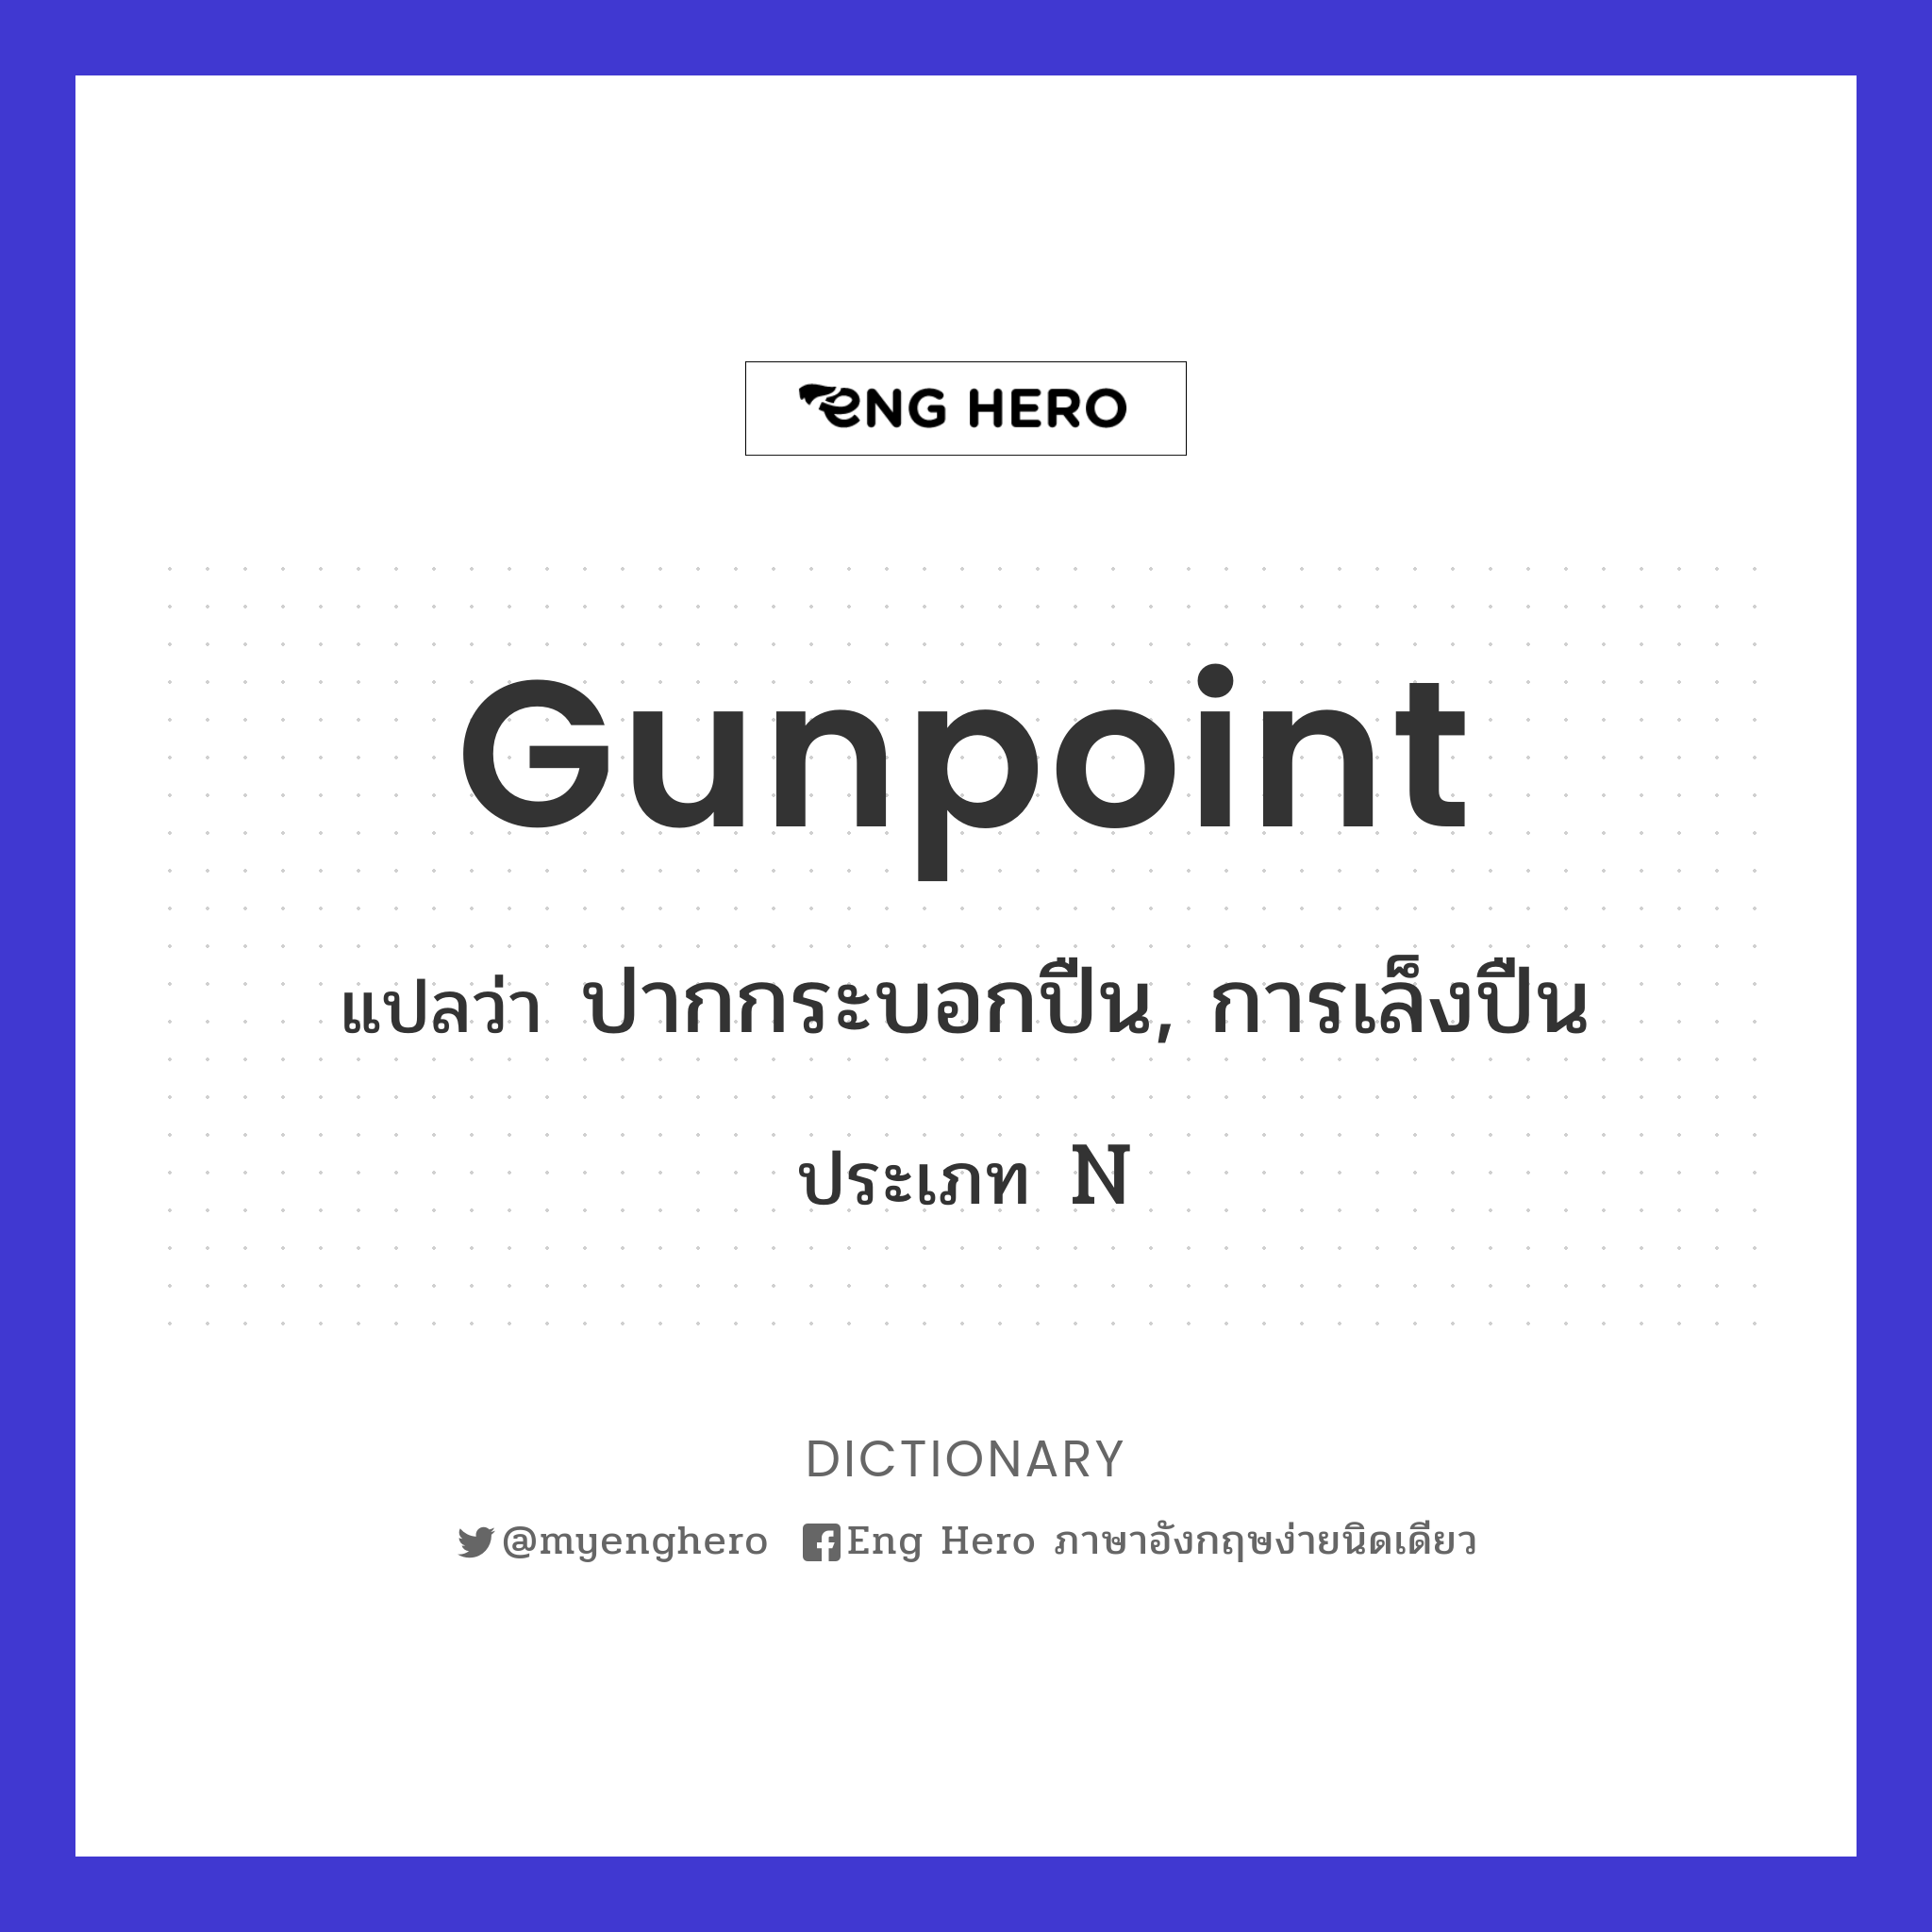 gunpoint